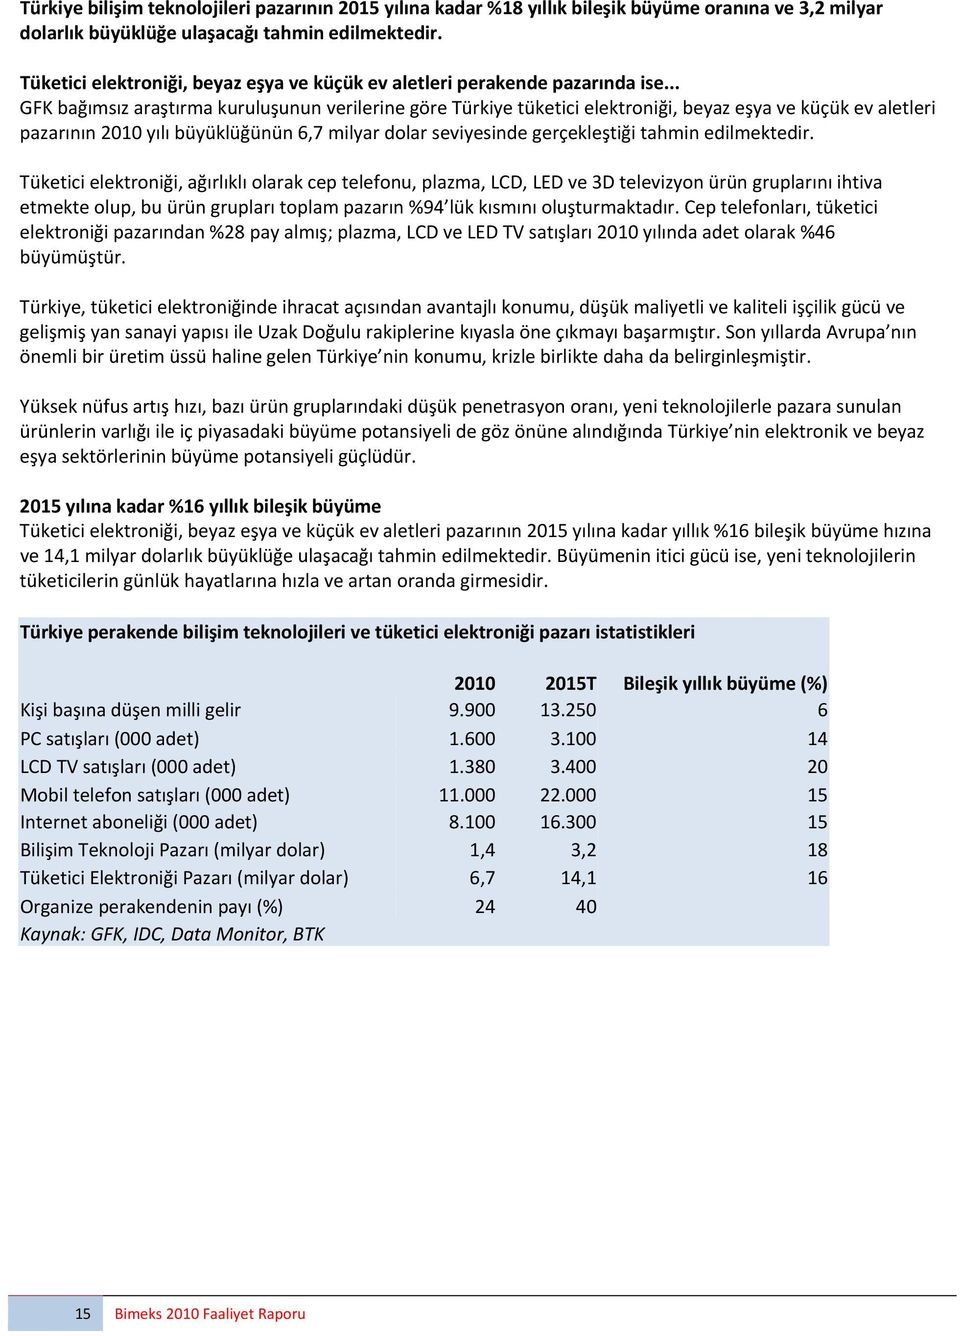 .. GFK bağımsız araştırma kuruluşunun verilerine göre Türkiye tüketici elektroniği, beyaz eşya ve küçük ev aletleri pazarının 2010 yılı büyüklüğünün 6,7 milyar dolar seviyesinde gerçekleştiği tahmin